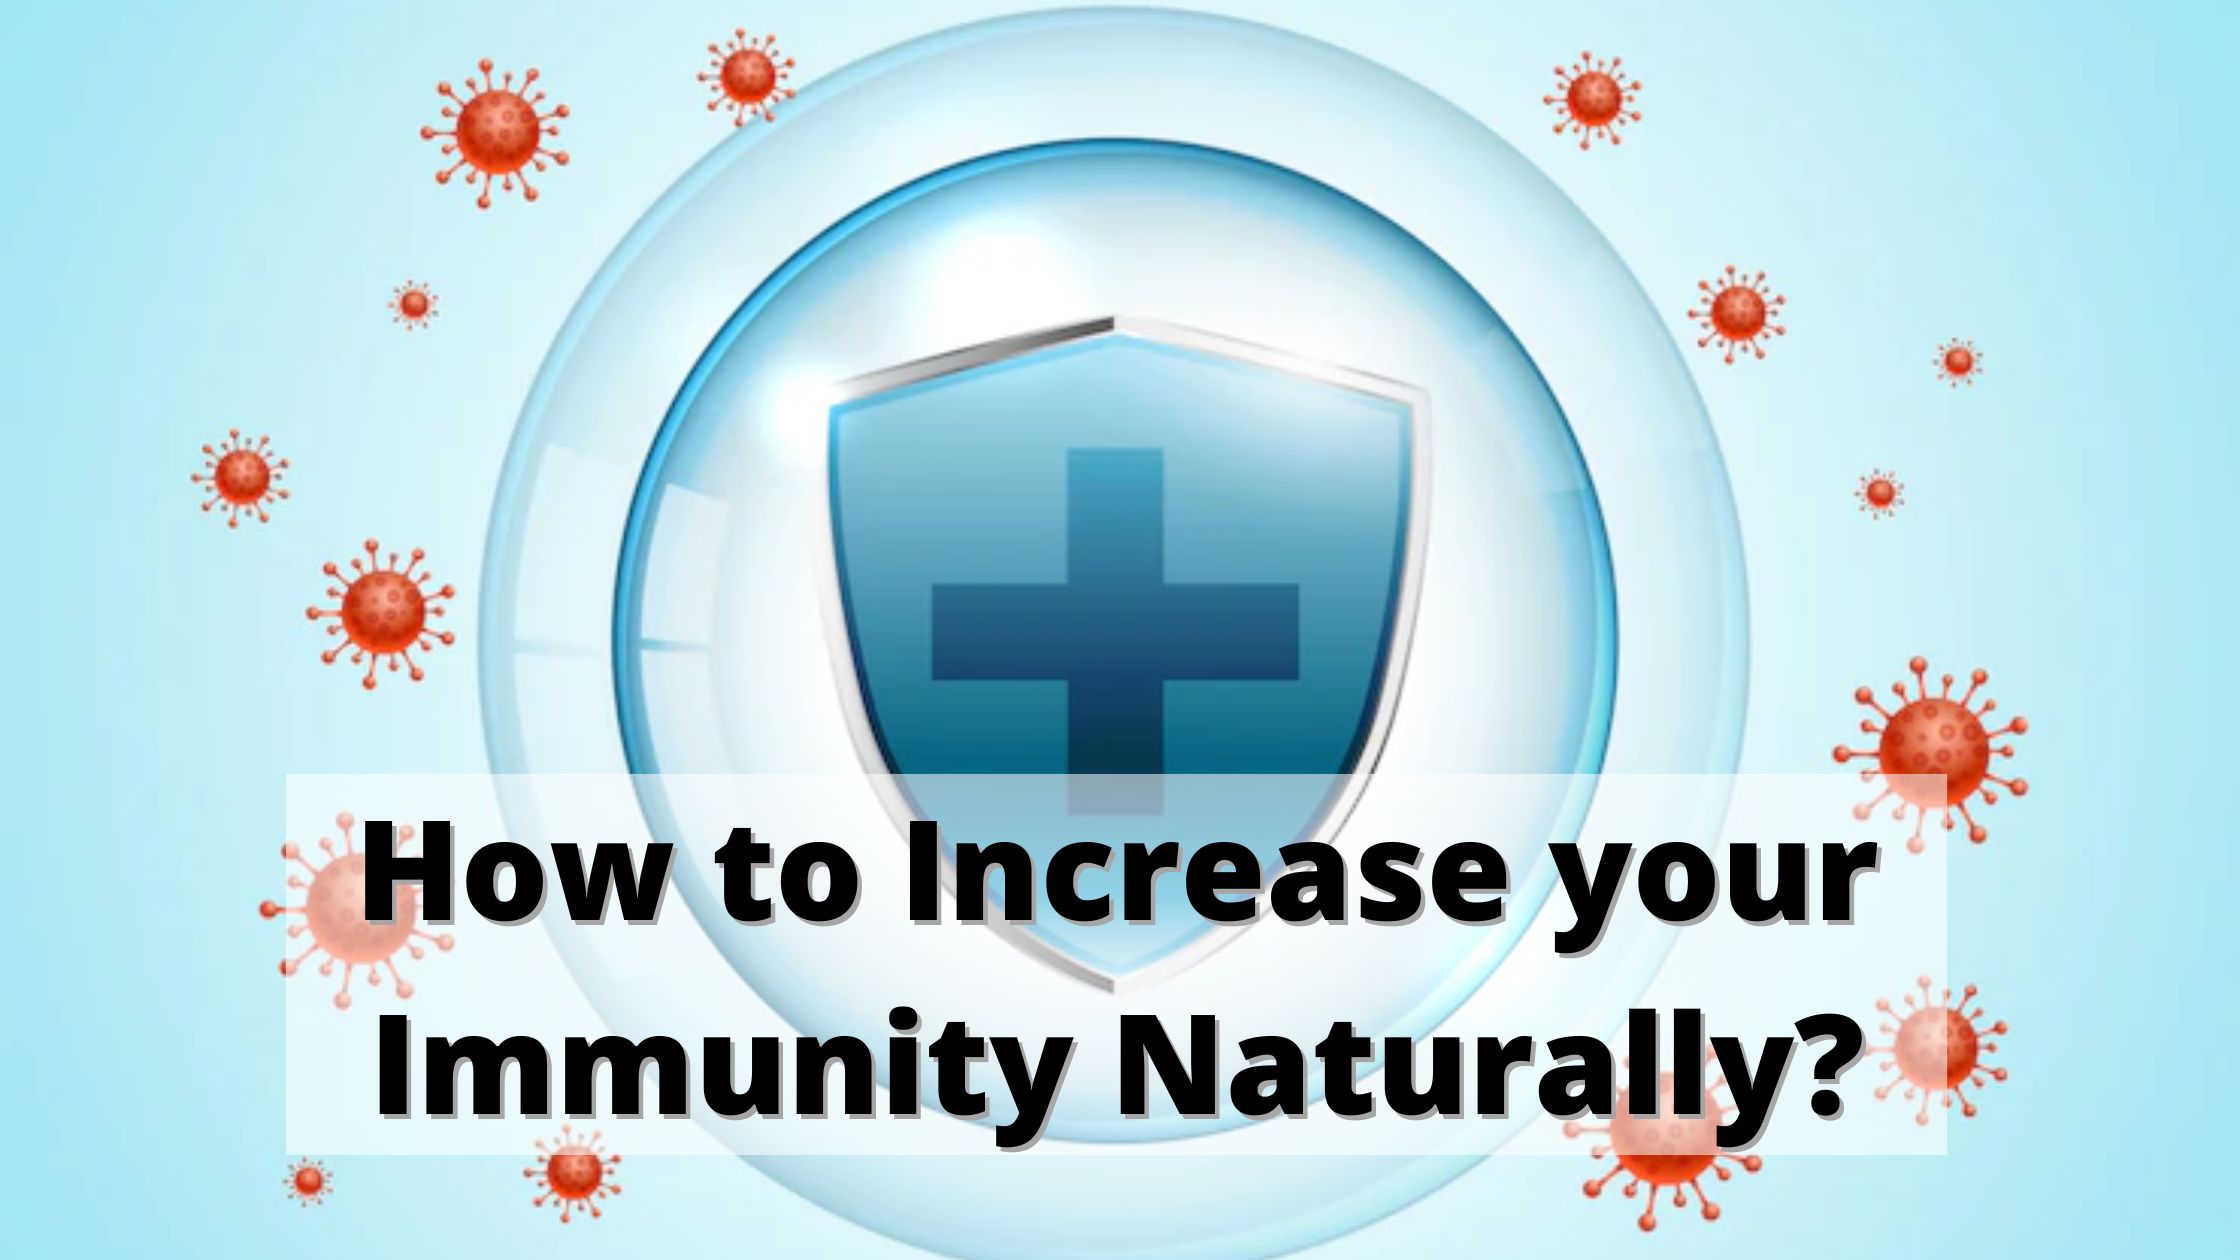 Improve Immunity Naturally